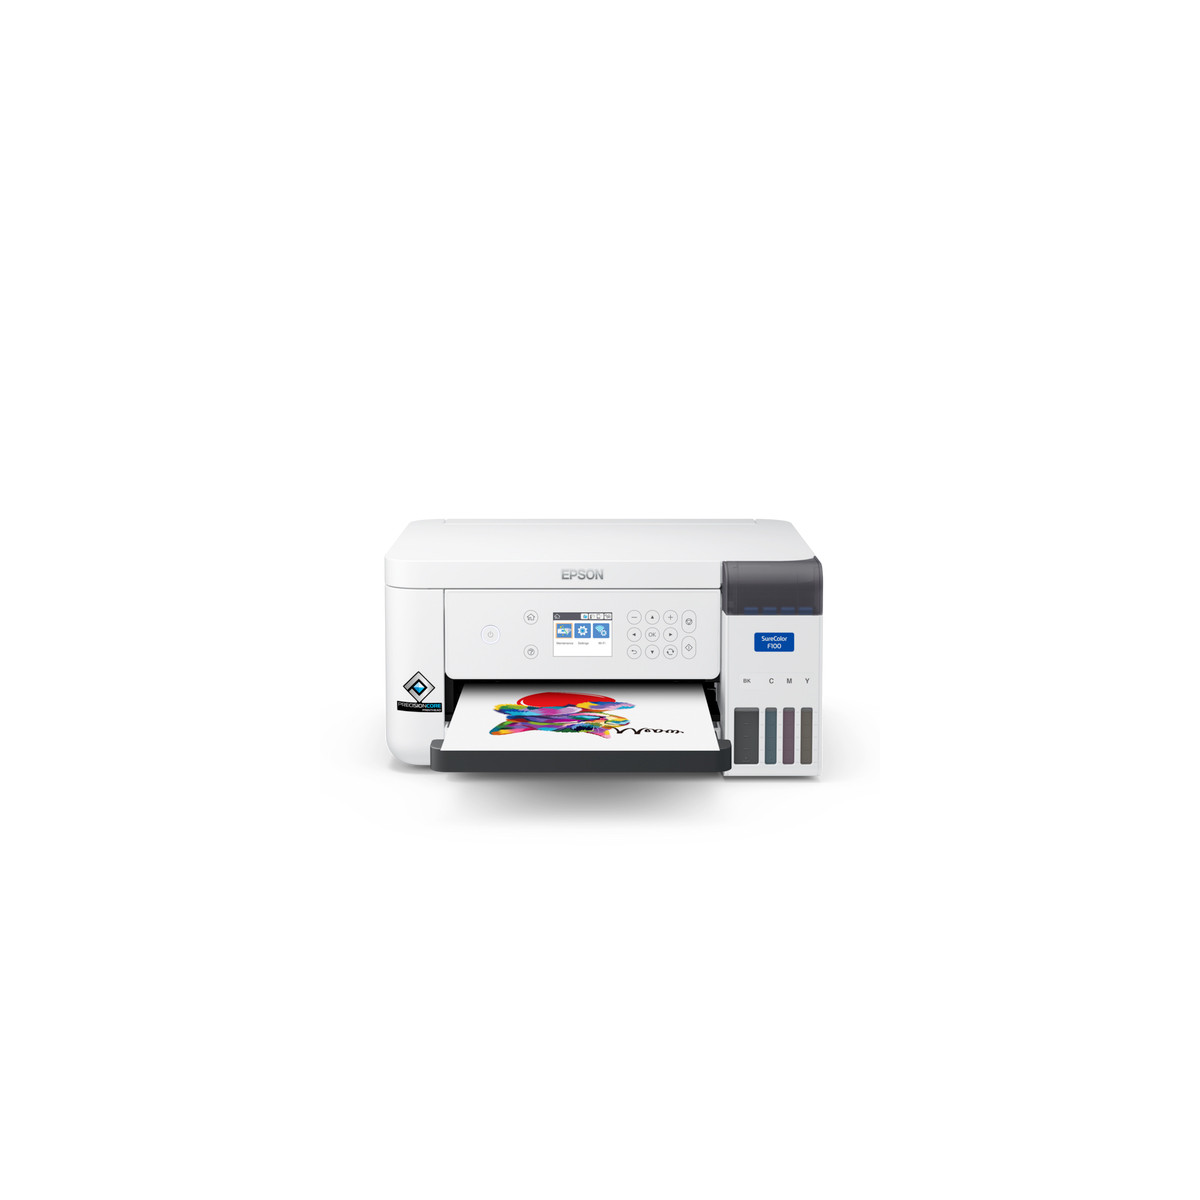  Epson - SC-F100 - Imprimante à Sublimation